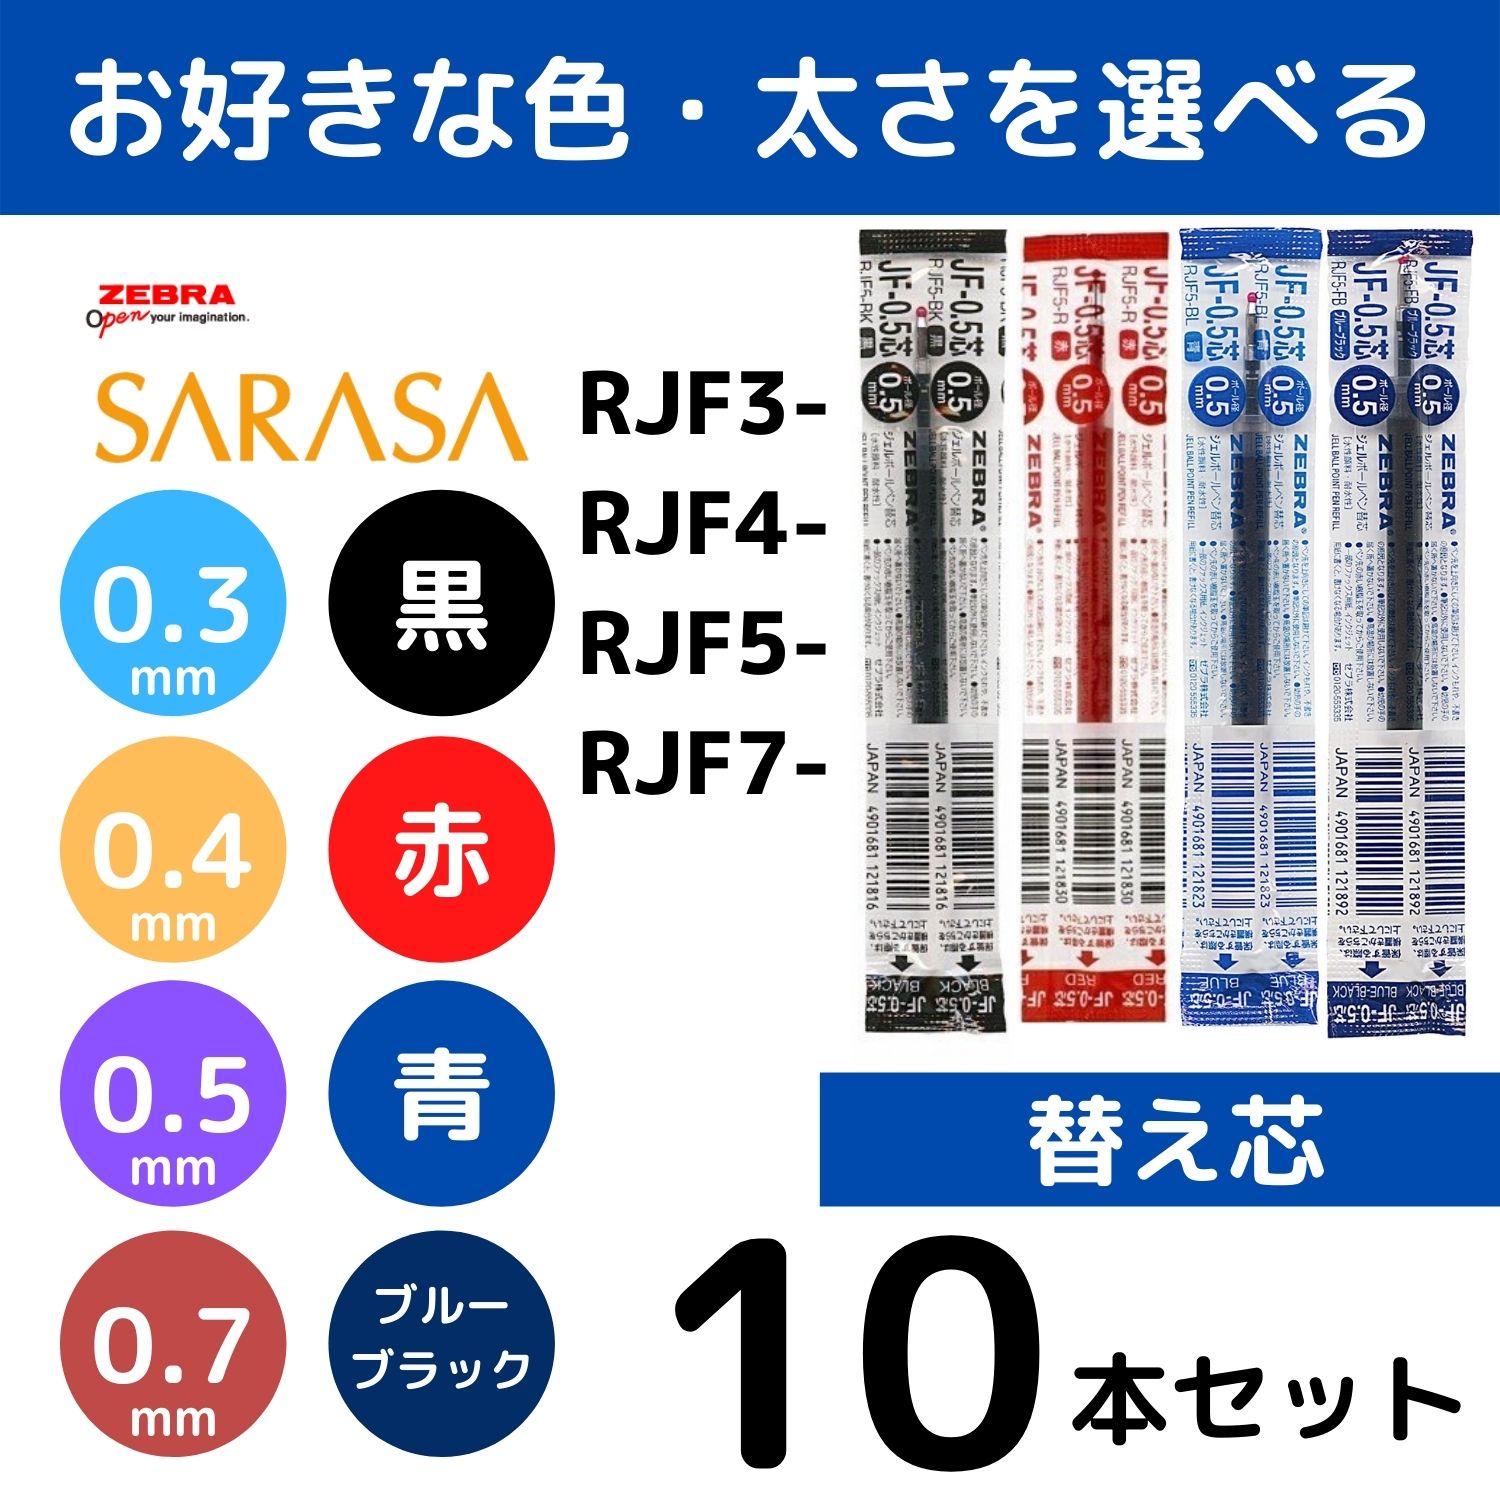 サラサクリップ 替え芯 替芯 新着 RJF3 RJF4 RJF5 RJF7よりどり選べる10本セット 0.3mm 0.4mm ゼブラ 0.7mm SARASA 青 ブルーブラック 赤 黒 オリジナル ボールペン 0.5mm